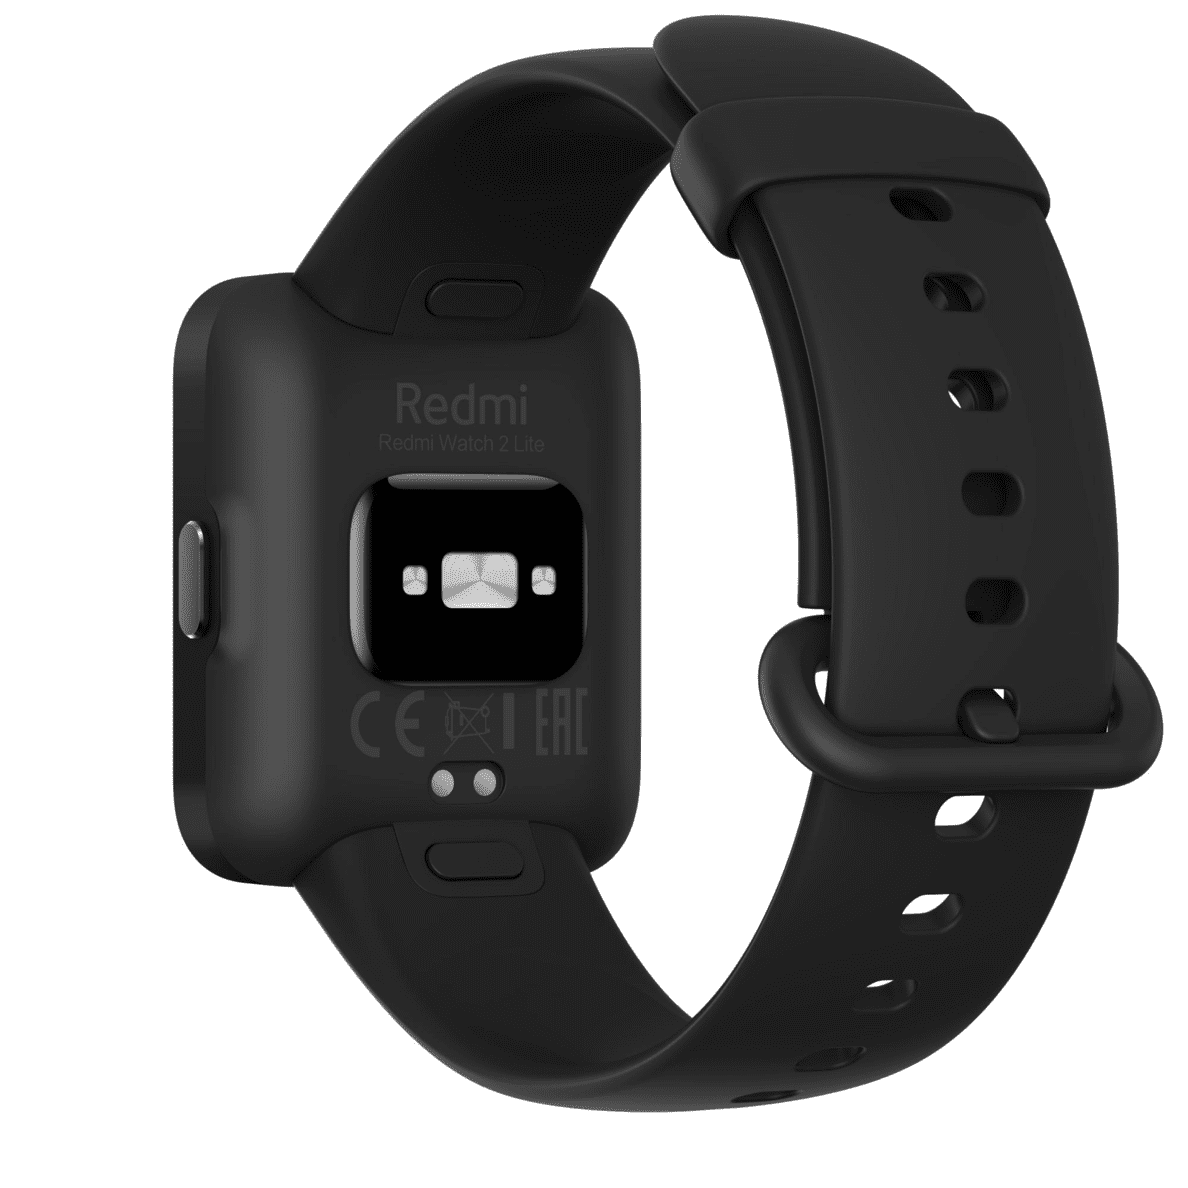 XIAOMI Redmi Watch 2 Lite Smartwatch schwarz Ansicht auf die Unterseite der Uhr